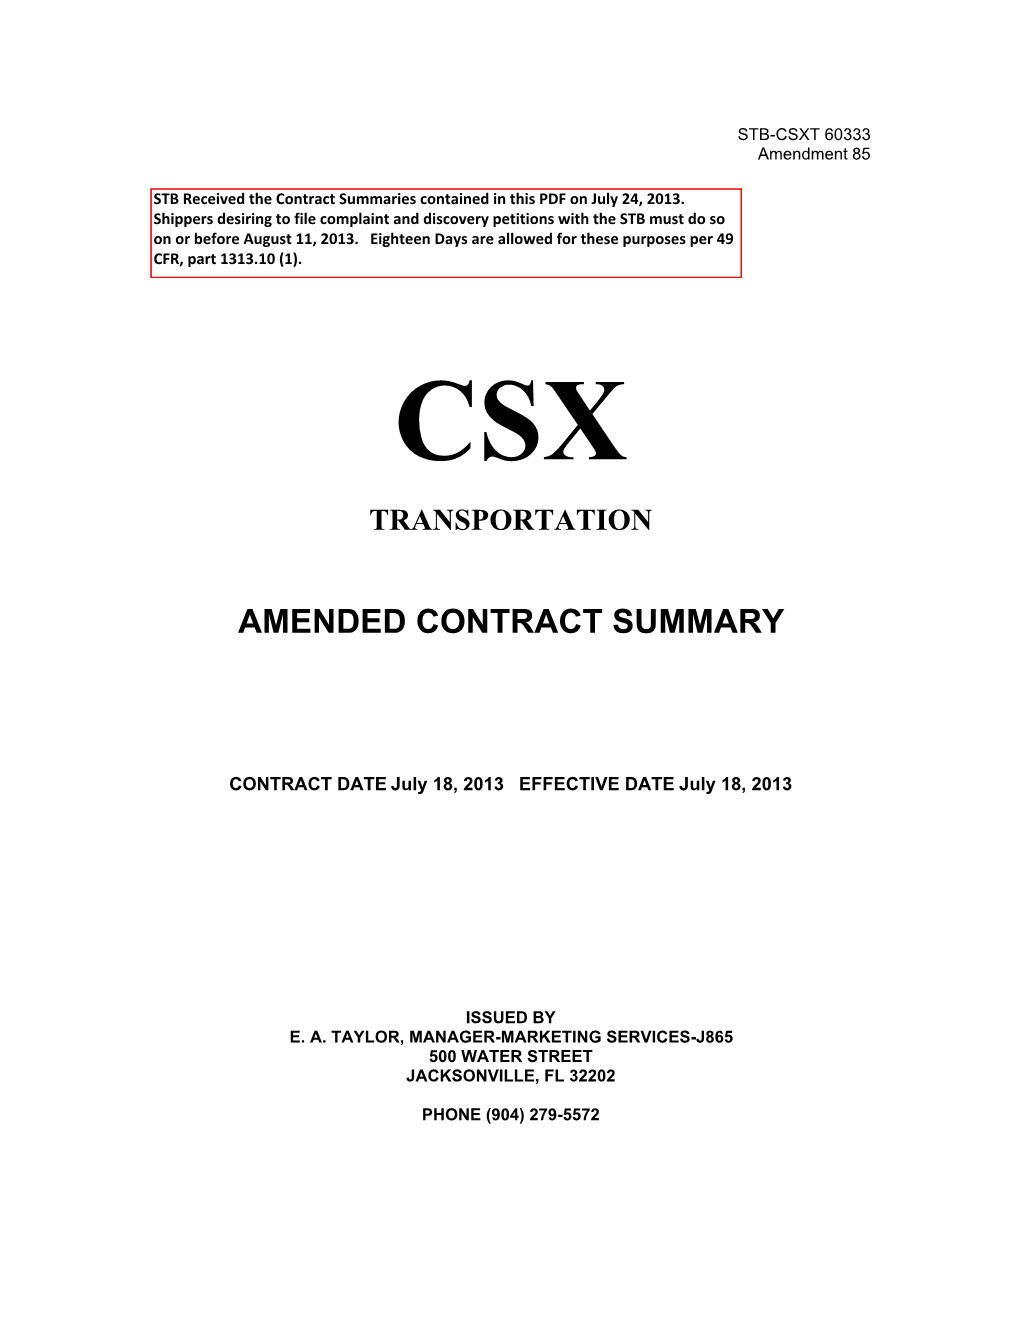 Csx Transportation Contract Summary